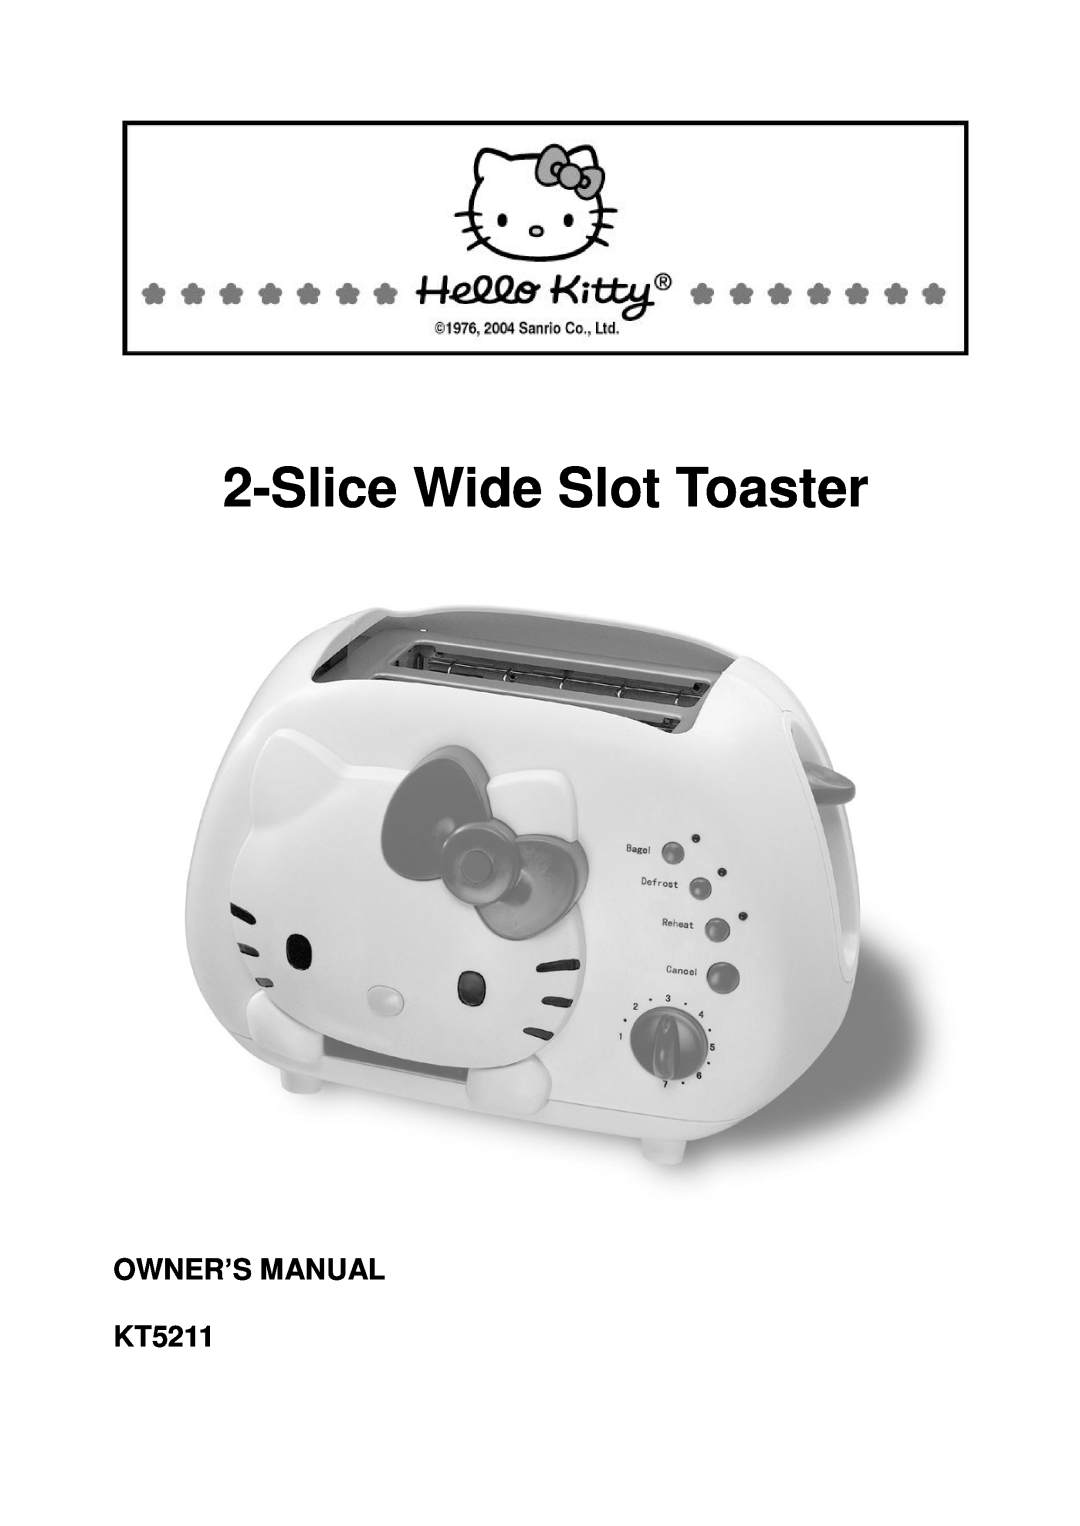 Spectra KT5211 owner manual SliceWide Slot Toaster 